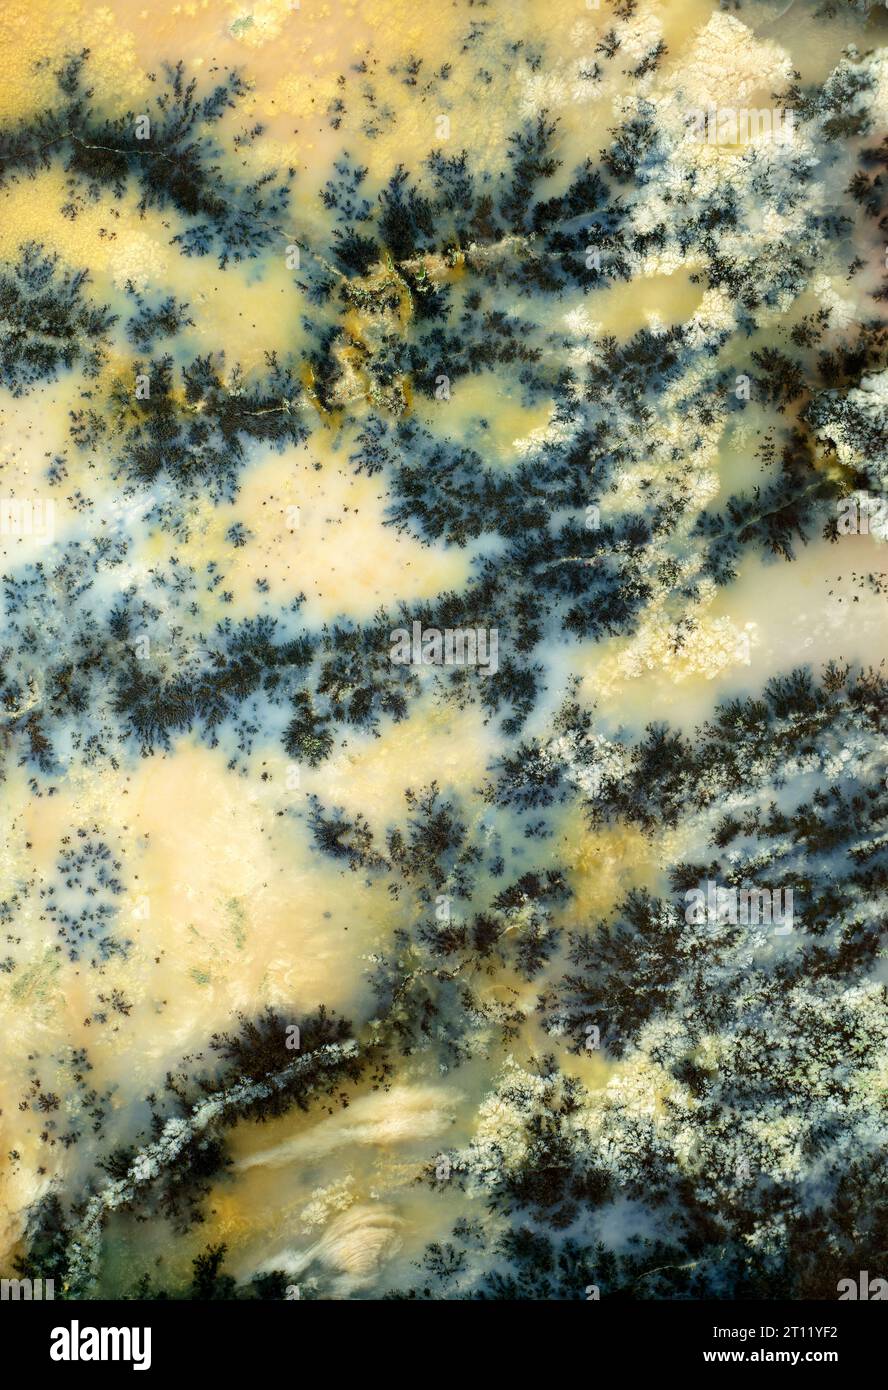 Oberfläche aus schönem dekorativen Stein, natürliches abstraktes Muster aus schwarzen, blauen und gelben Streifen, Linien, Rissen, Flecken und Flecken Stockfoto